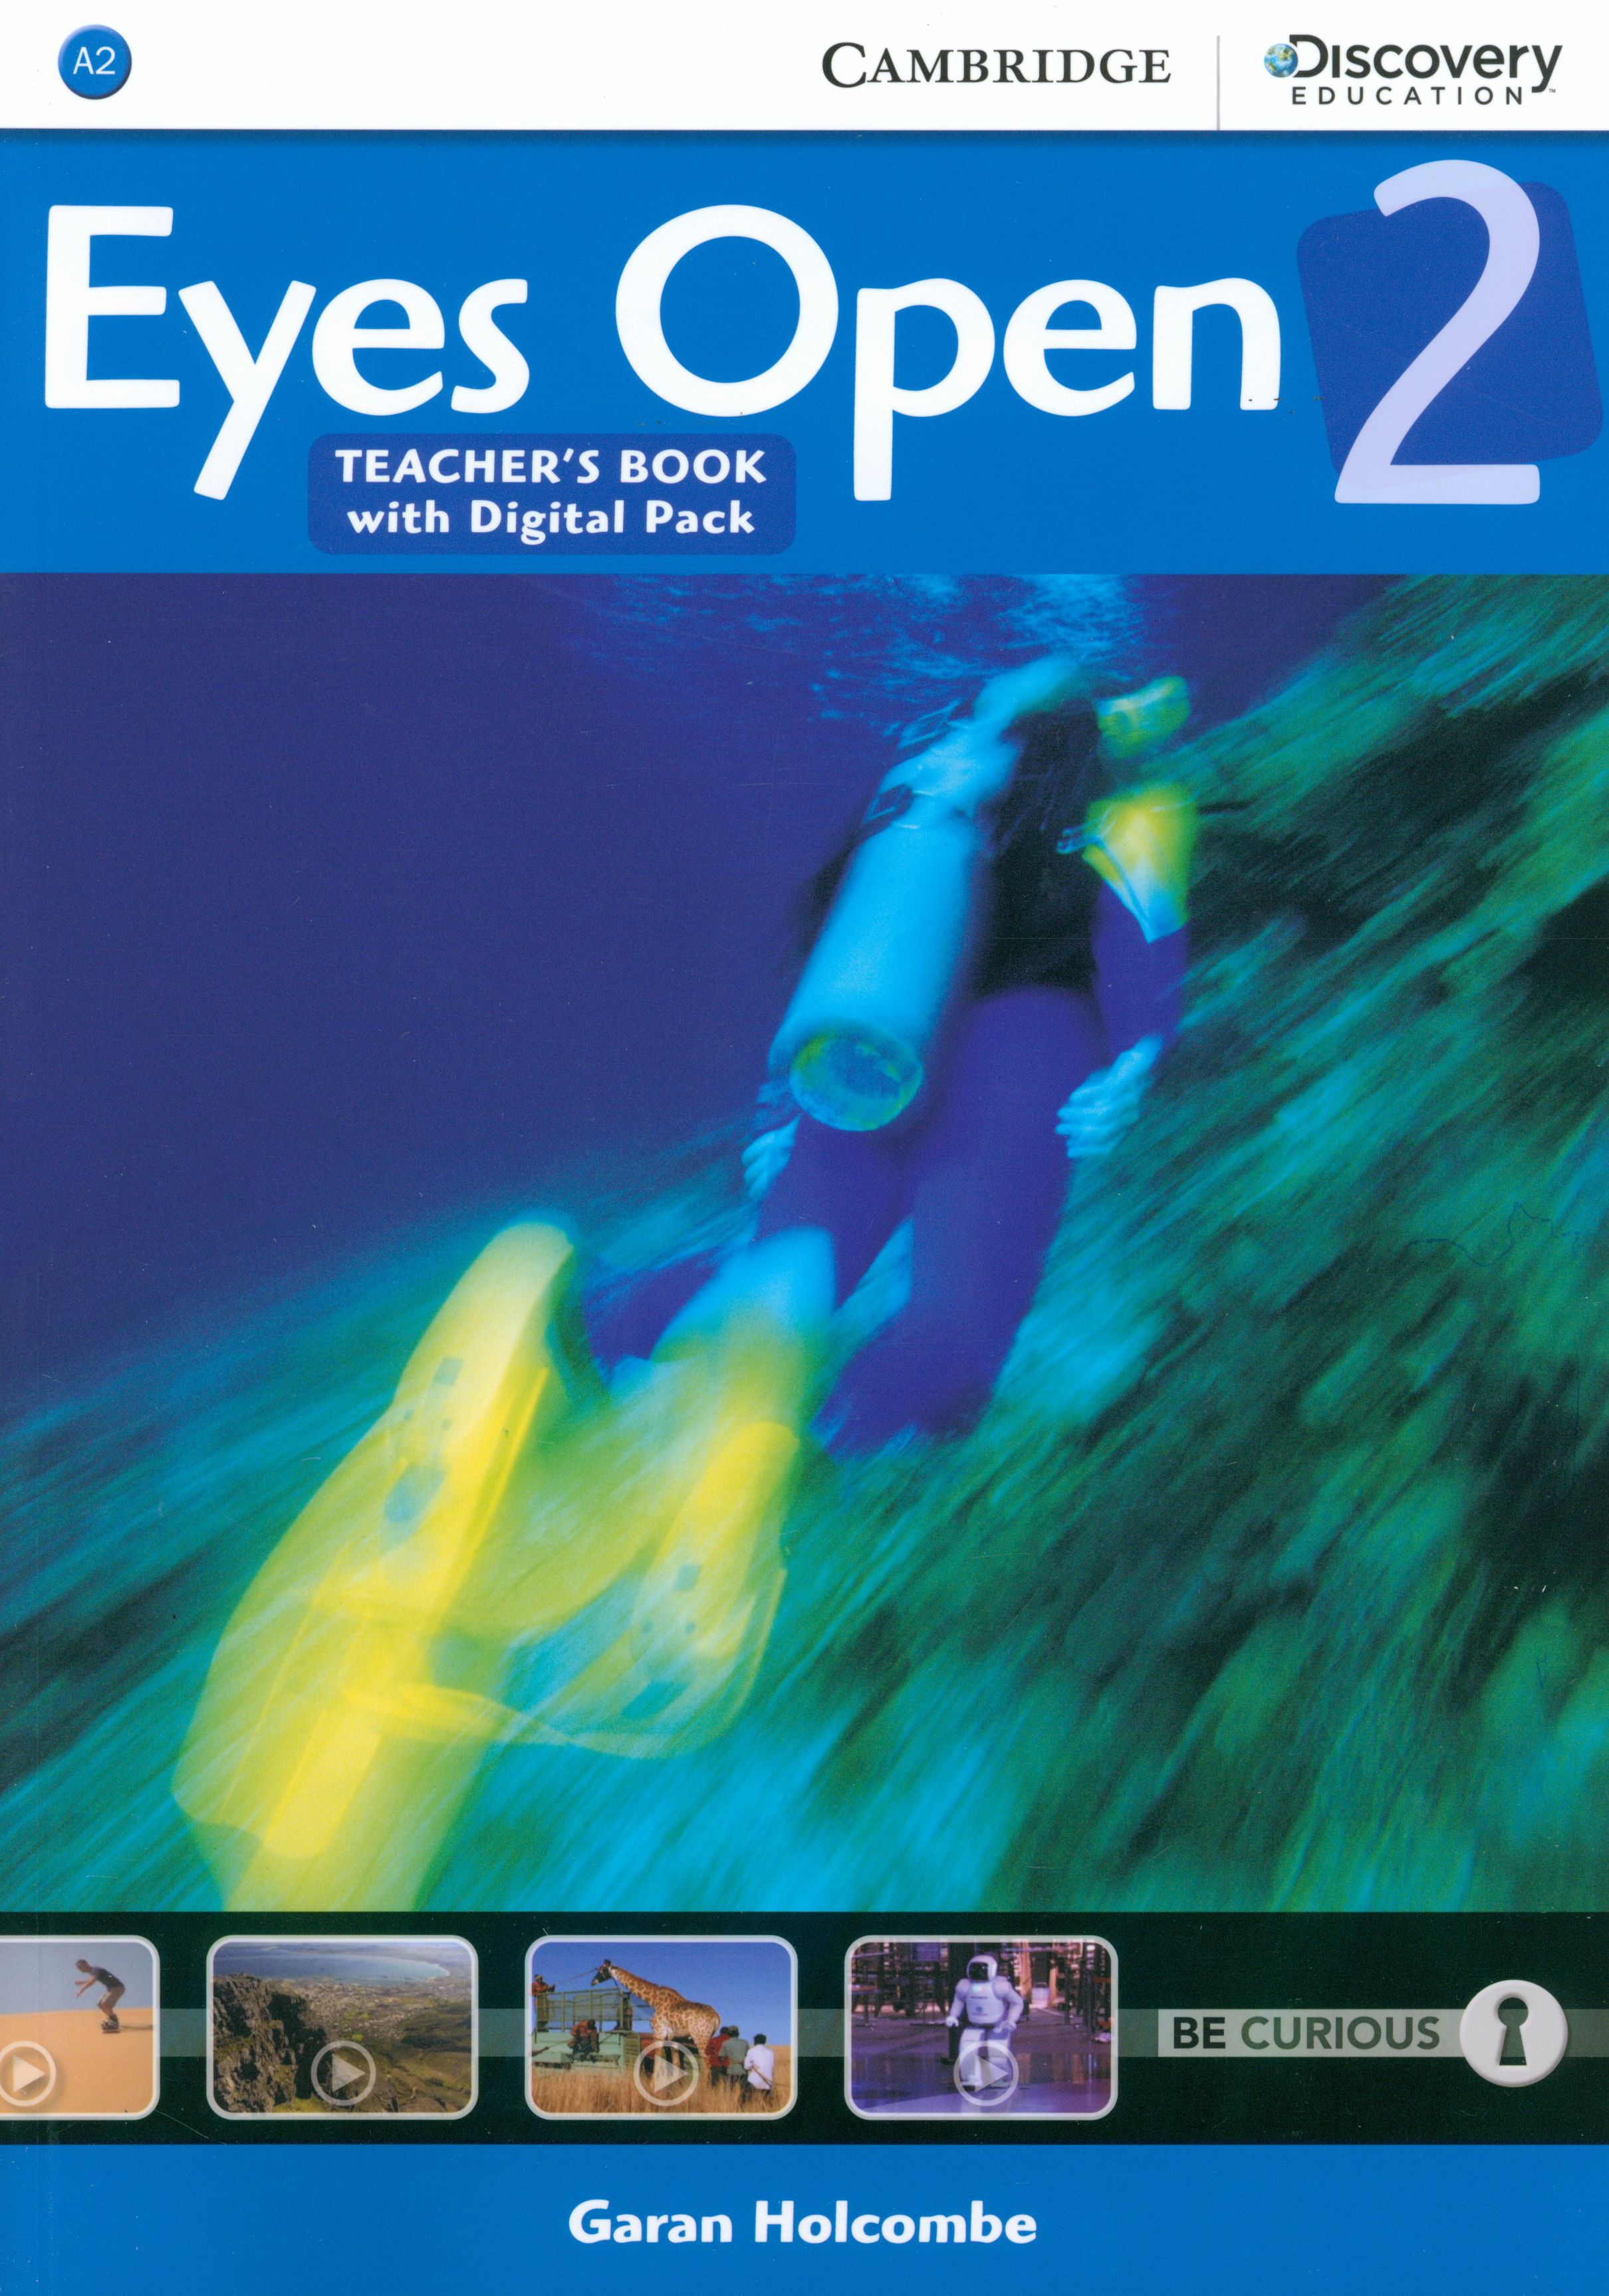 Open eyes capcut. Eyes open учебник. Eyes open 2 Workbook. Учебник Eyes open 2. Учебник Eyes open 1.